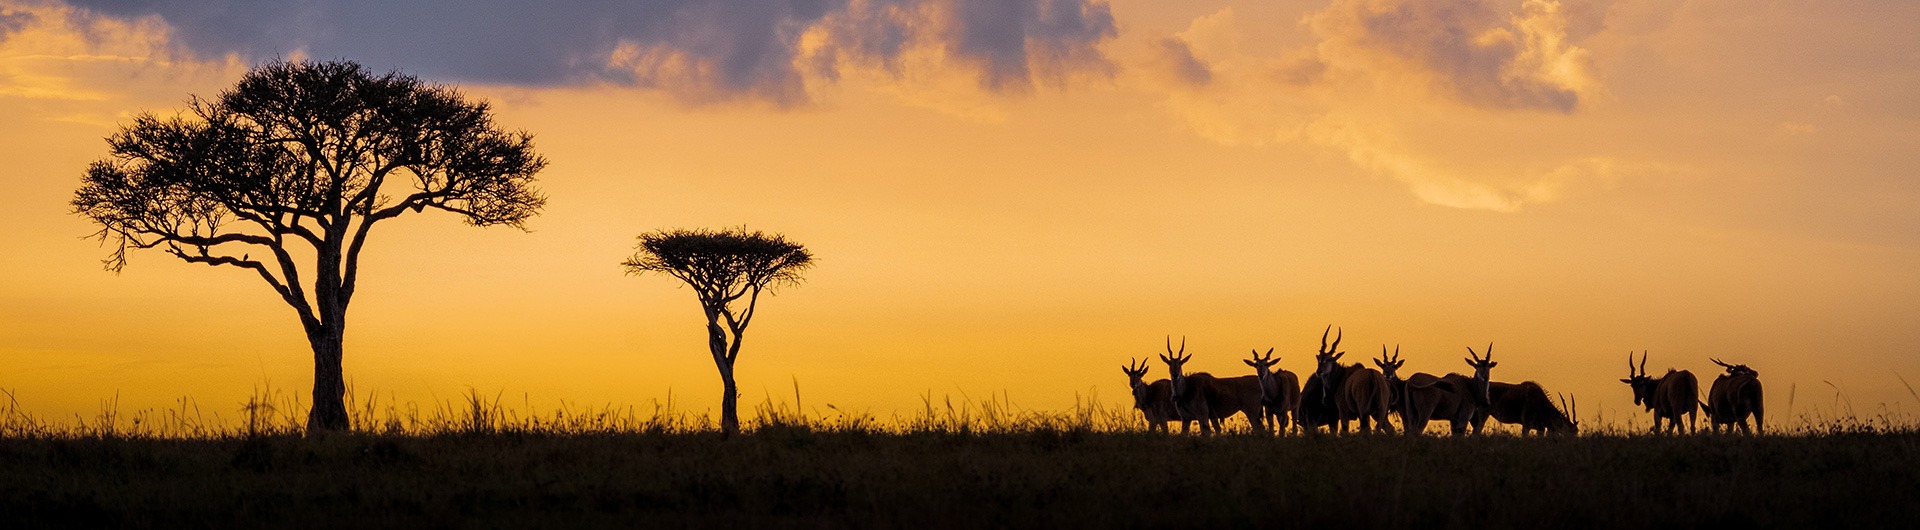 Antelope at sunset, Kenya